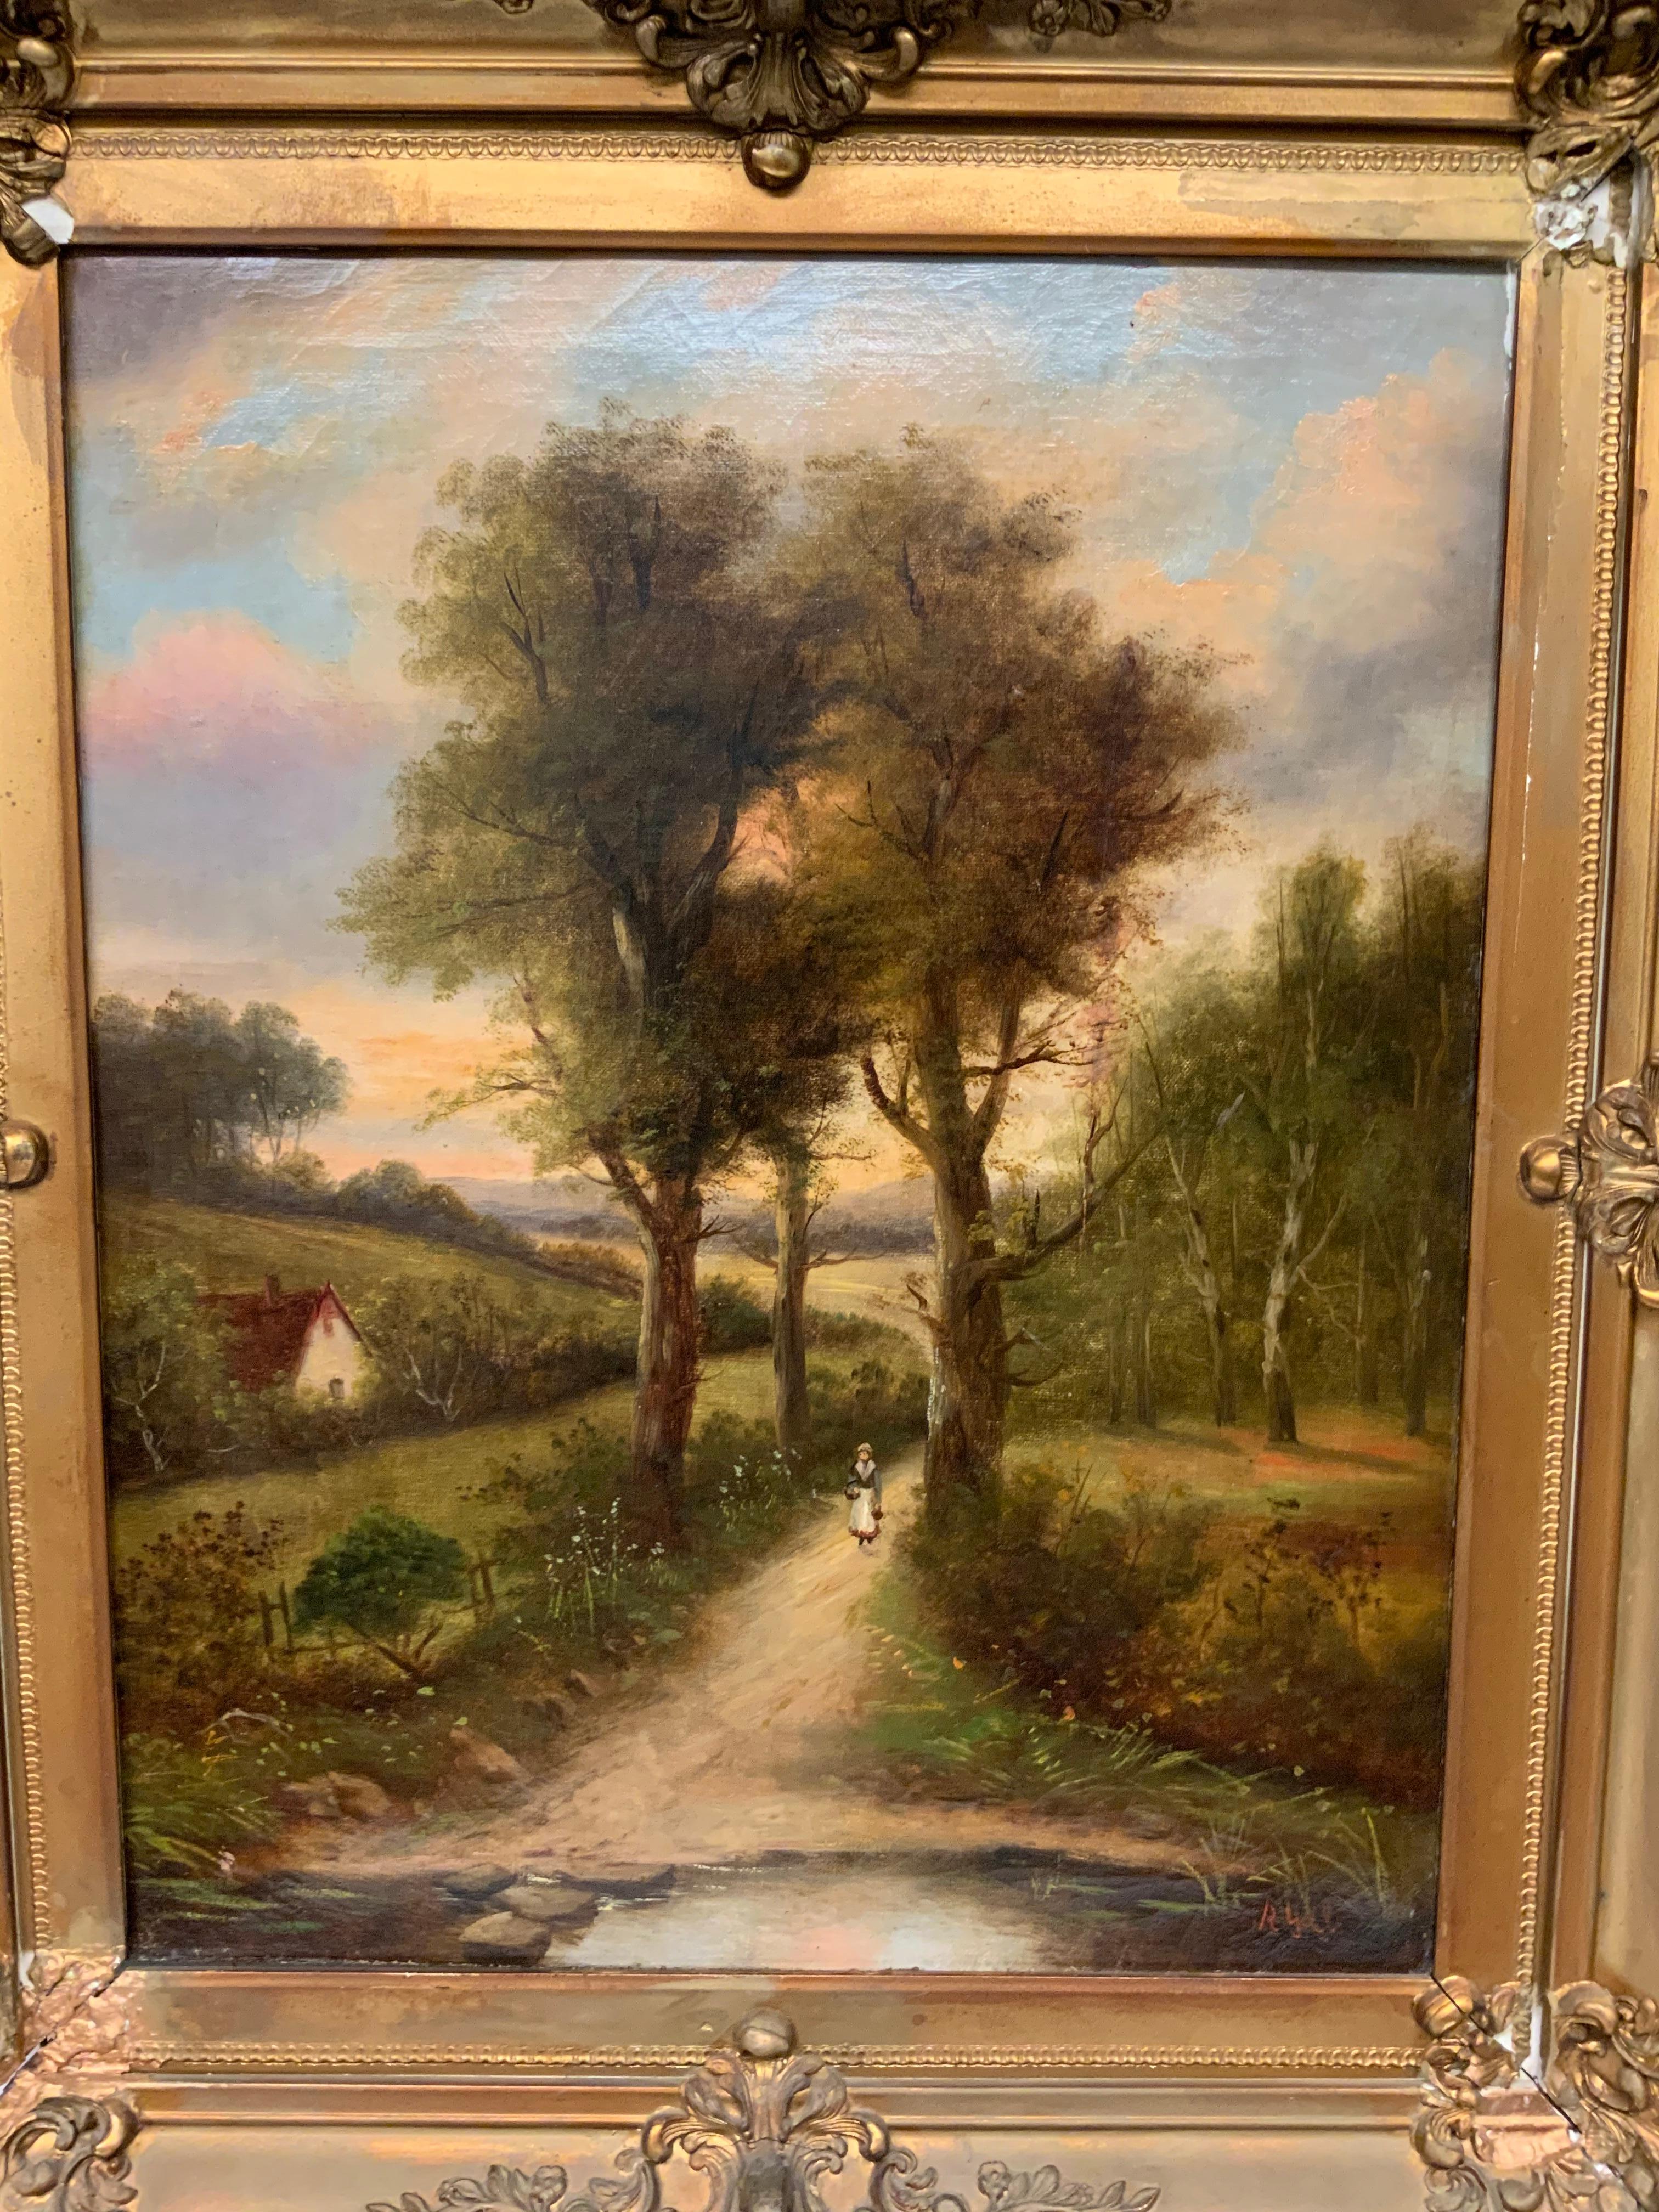 Il s'agit d'une peinture à l'huile qui illustre une paysanne dans un chemin de campagne descendant vers un lac au coucher du soleil. Deux grands arbres délimitent le chemin. Il y a une petite maison à droite d'elle et des buissons verts tout autour.